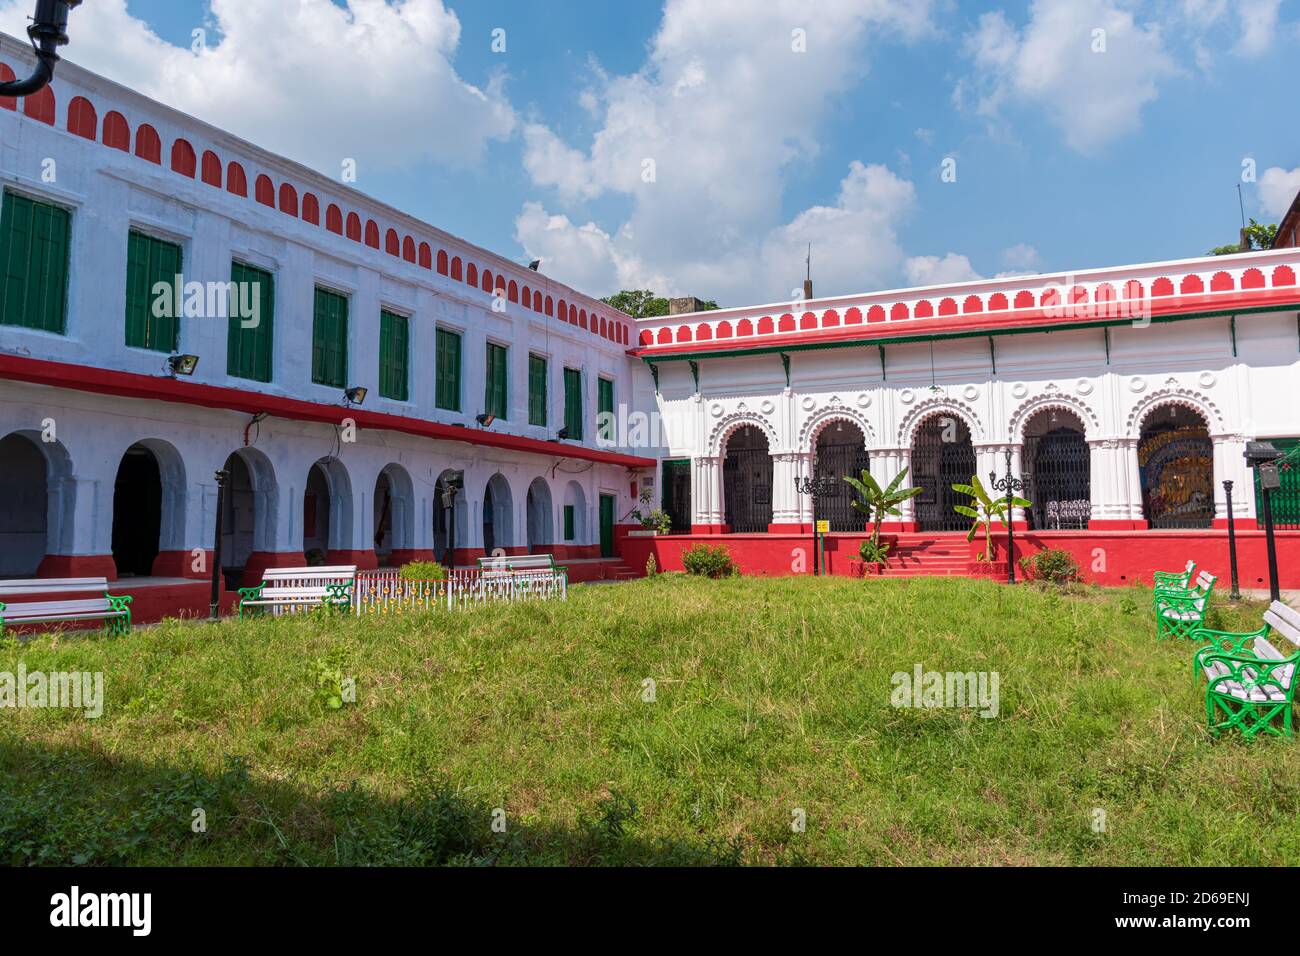 Shobhabazar Rajbari est le palais de la famille royale de Shobhabazar situé dans la ville indienne de Kolkata est célèbre pour Bonedi Bari Durga Puja. Calcutta, Banque D'Images